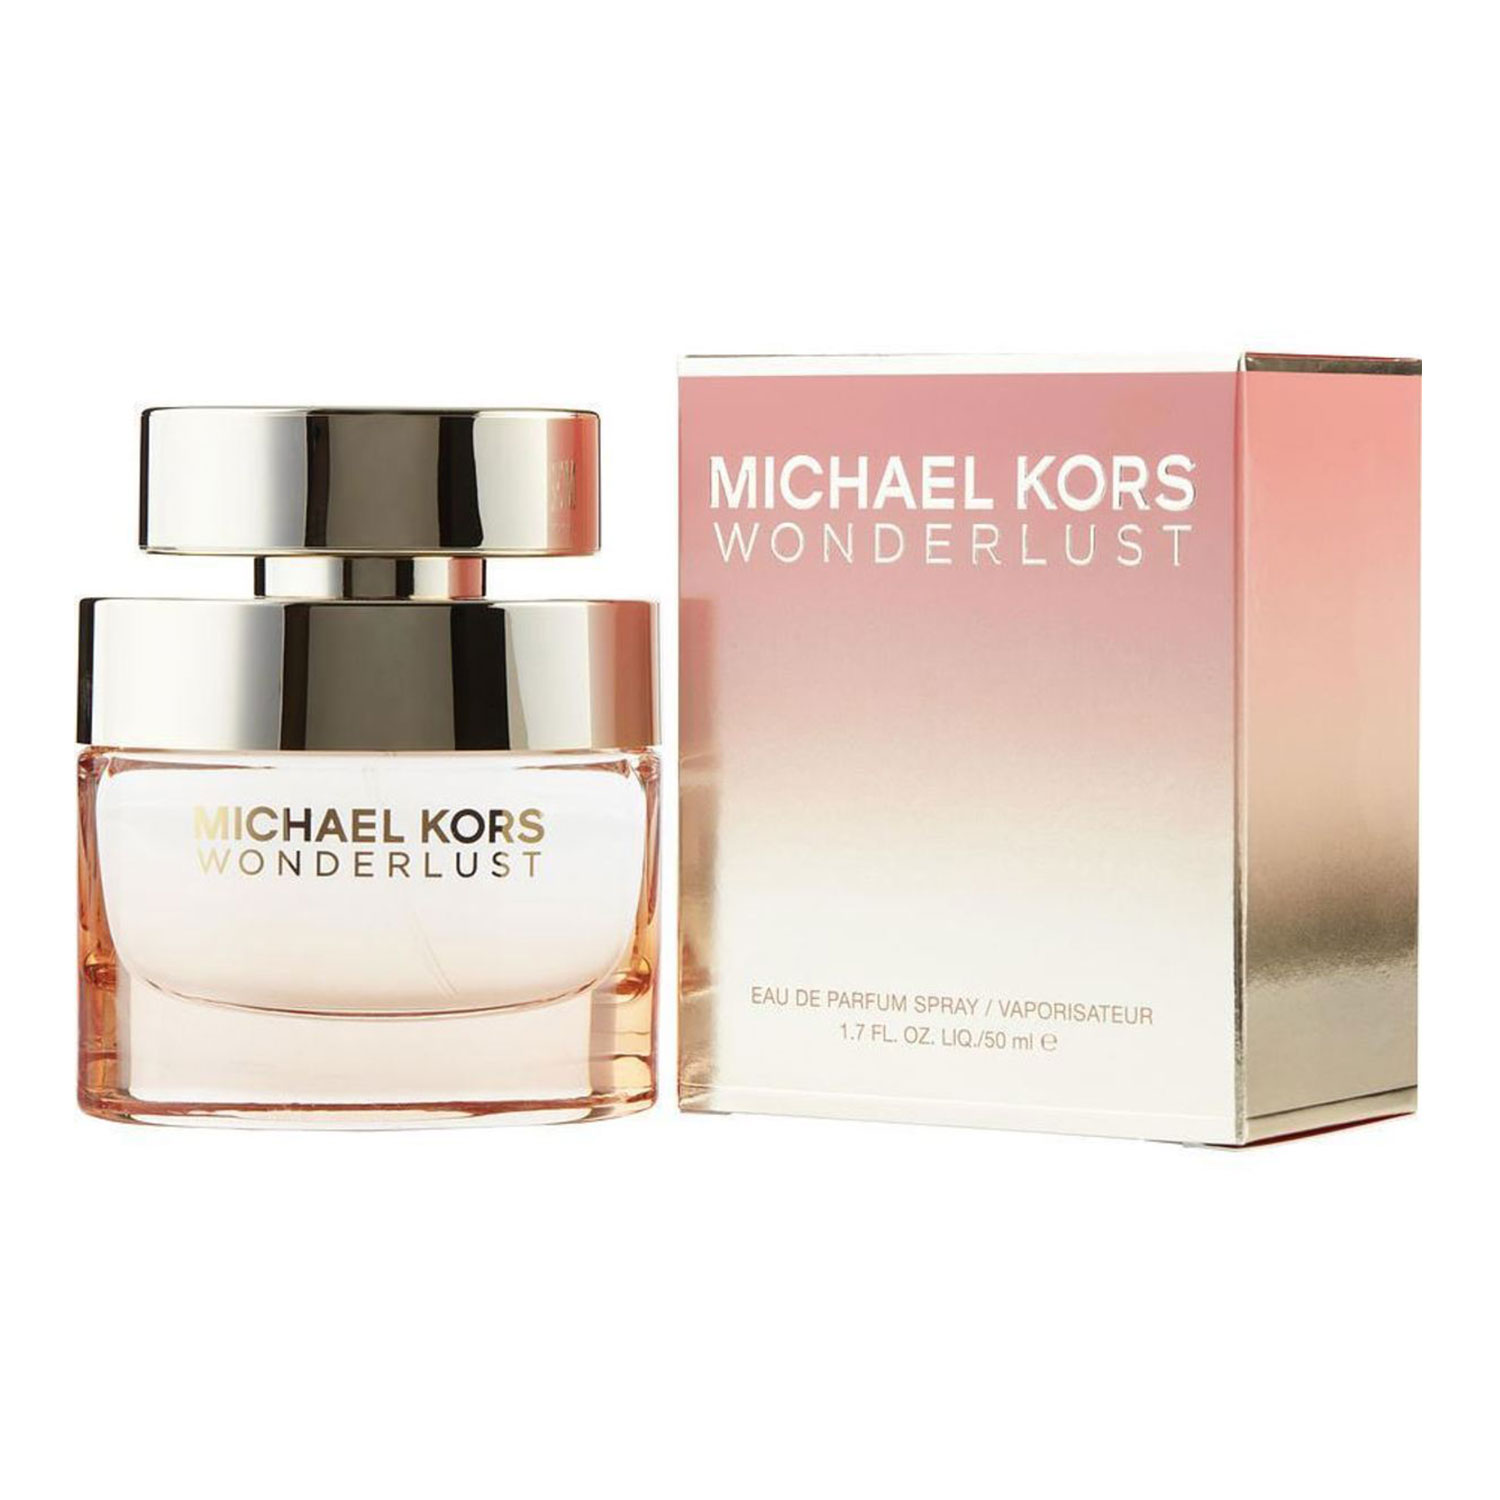 Michael Kors Wonderlust Sensual Essence Eau de Parfum Review